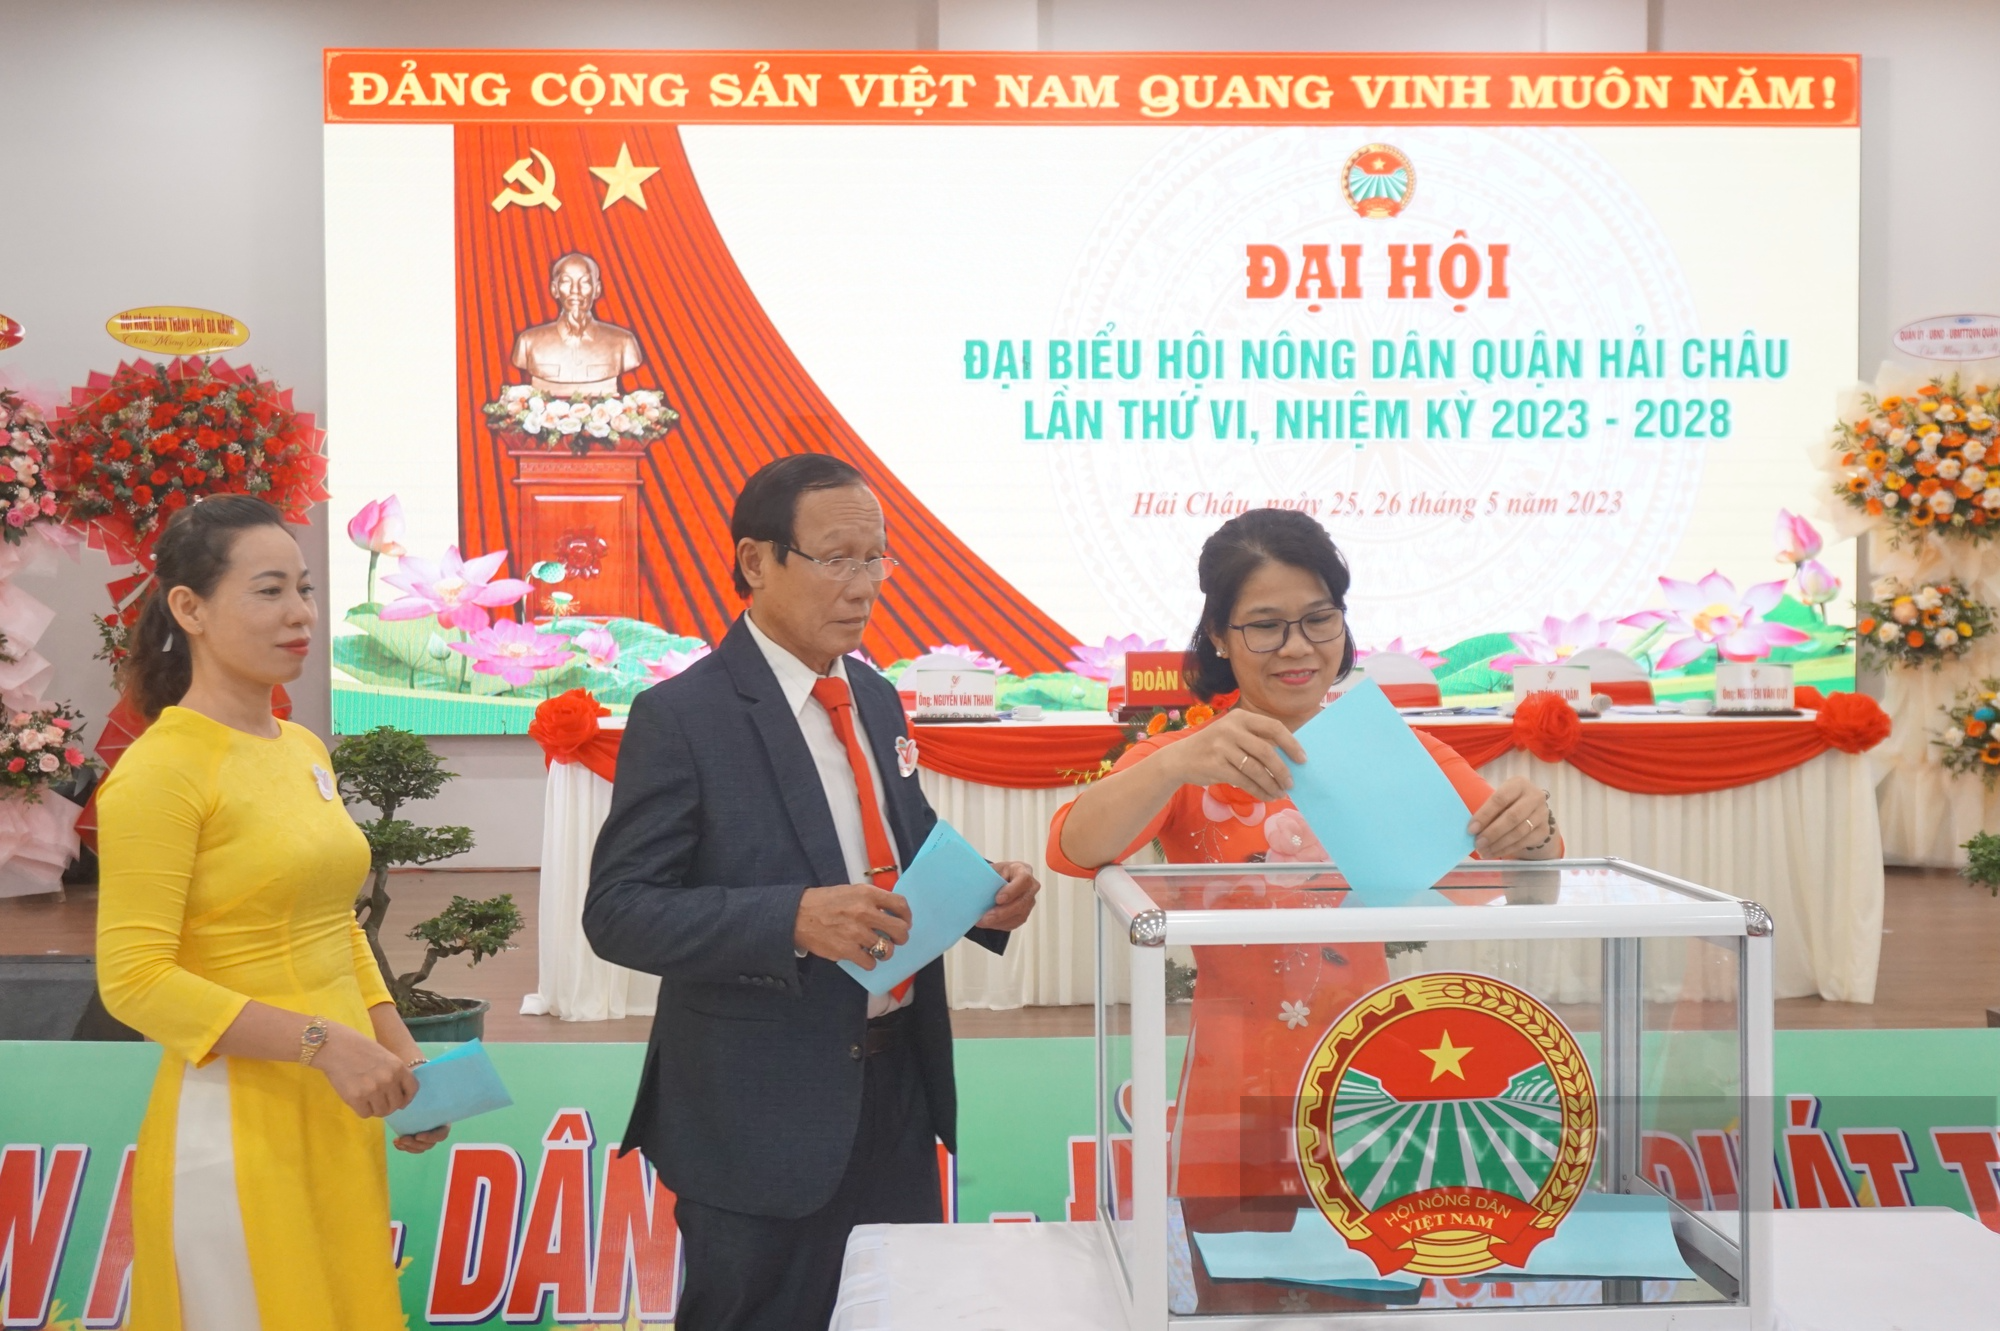 Ông Hoàng Minh Trinh tái đắc cử chức Chủ tịch Hội Nông dân quận Hải Châu - Ảnh 5.